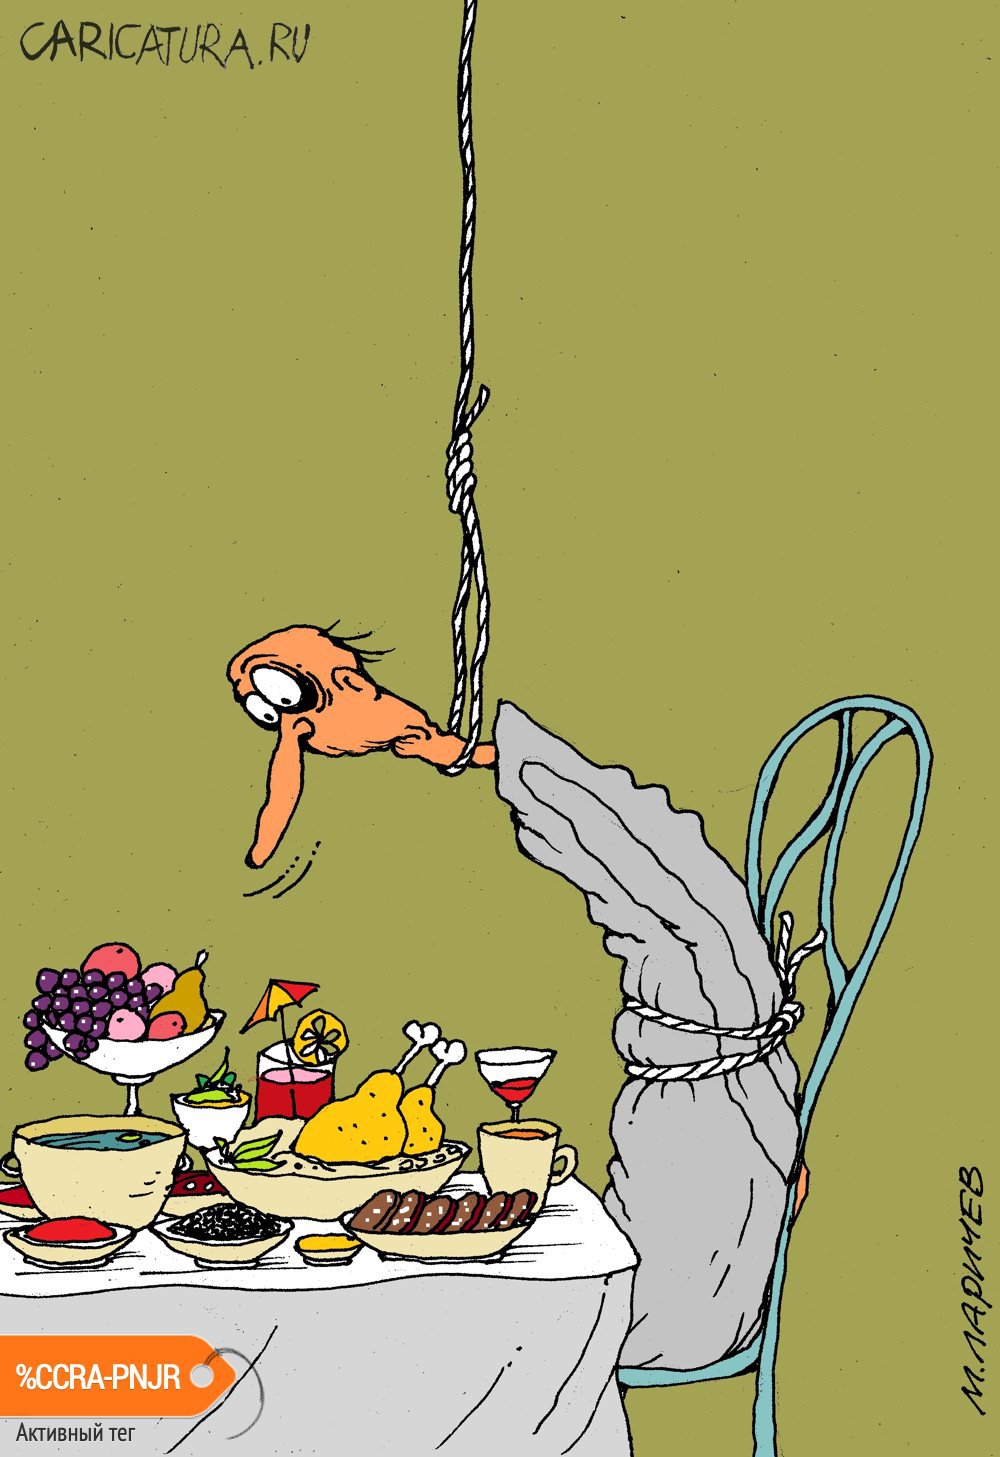 Карикатура "Кушать подано", Михаил Ларичев